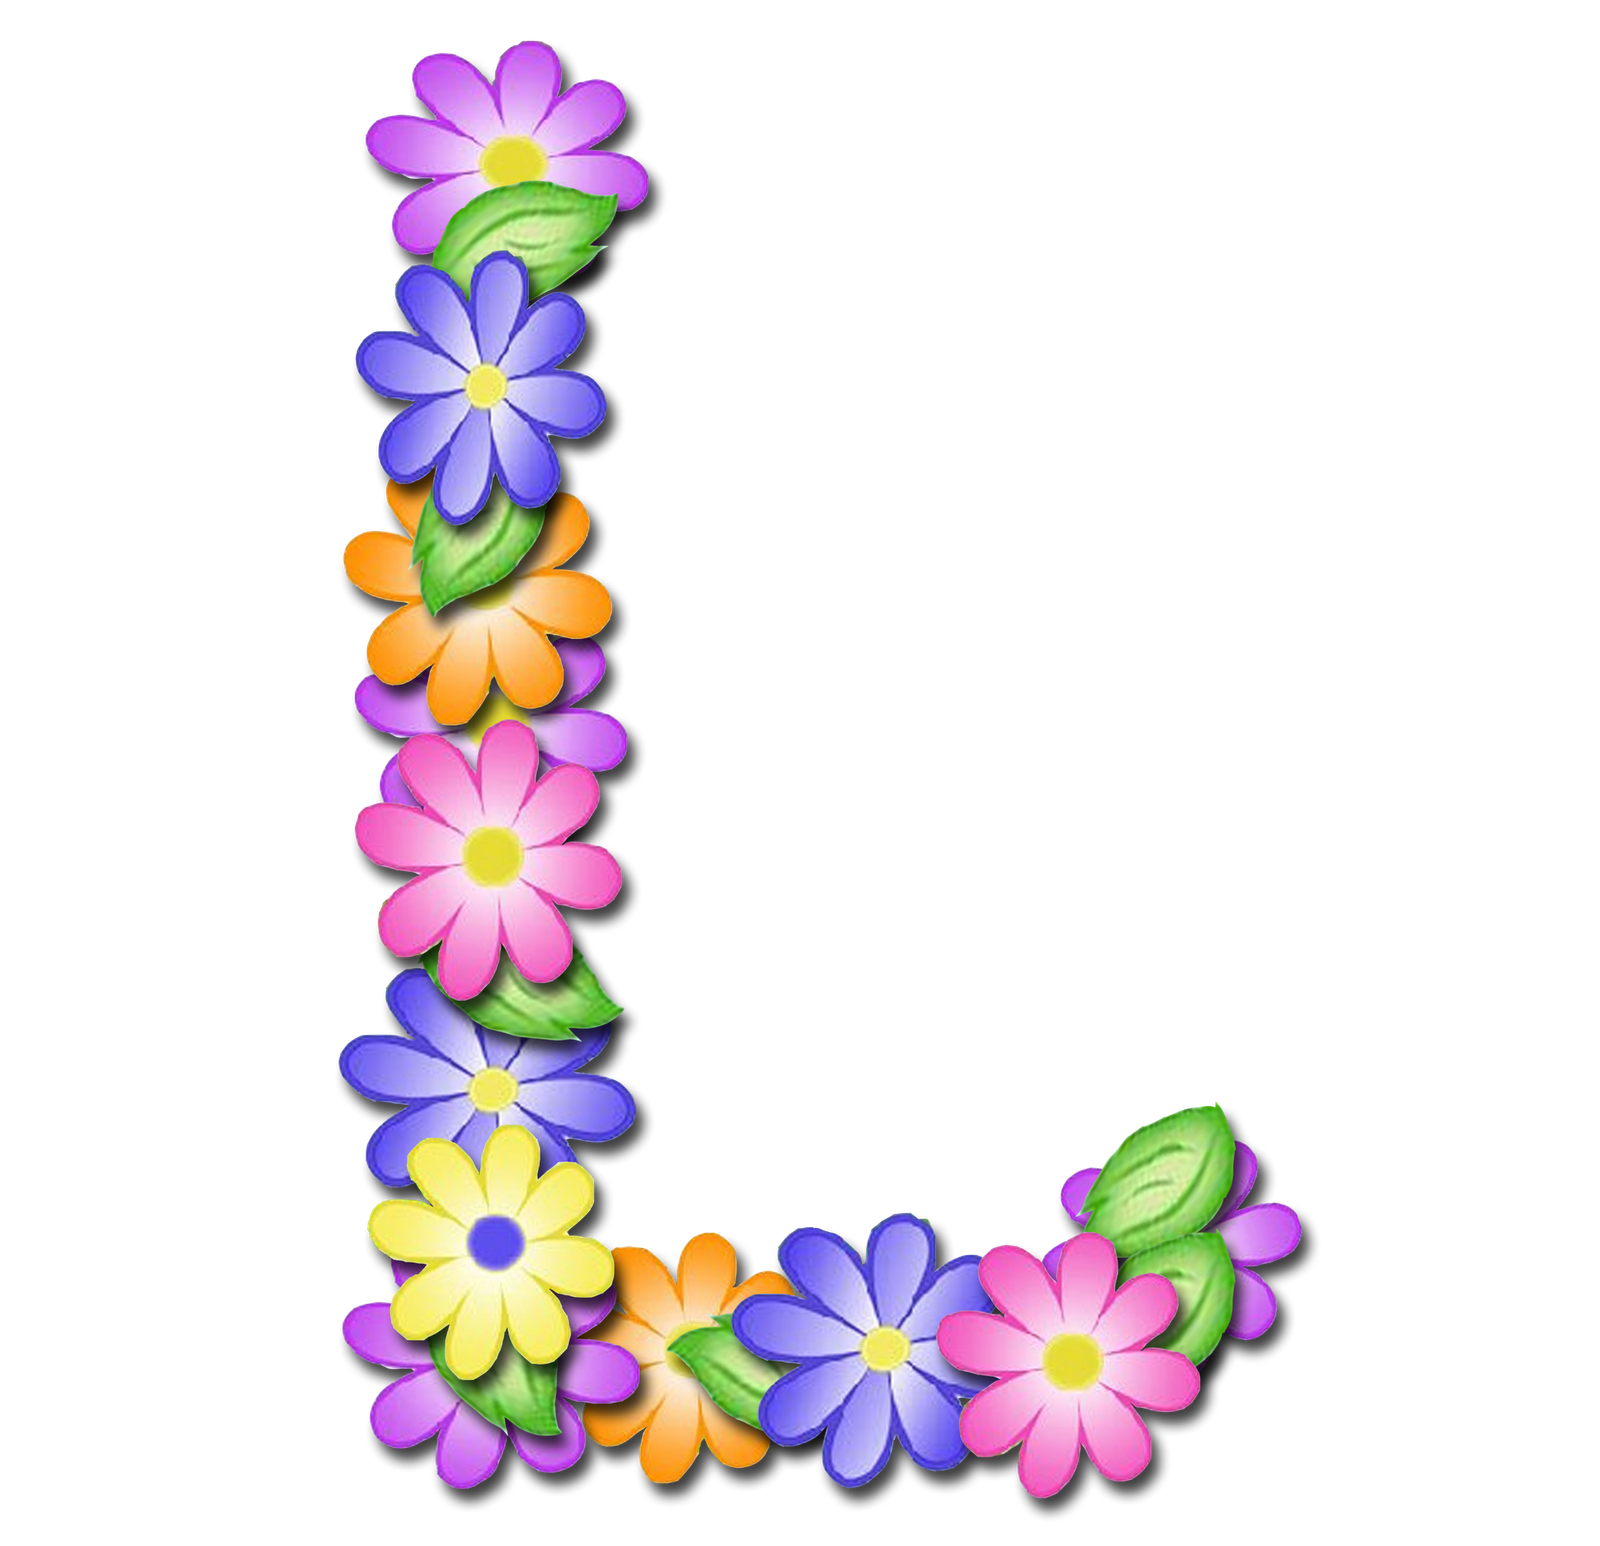 صور الحروف الإنجليزية بأجمل الزهور والورود بخلفية شفافة بنج png وجودة عالية للمصممين :: إبحث عن حروف إسمك بالإنجليزية - صفحة 2 P_1699gk6pf1